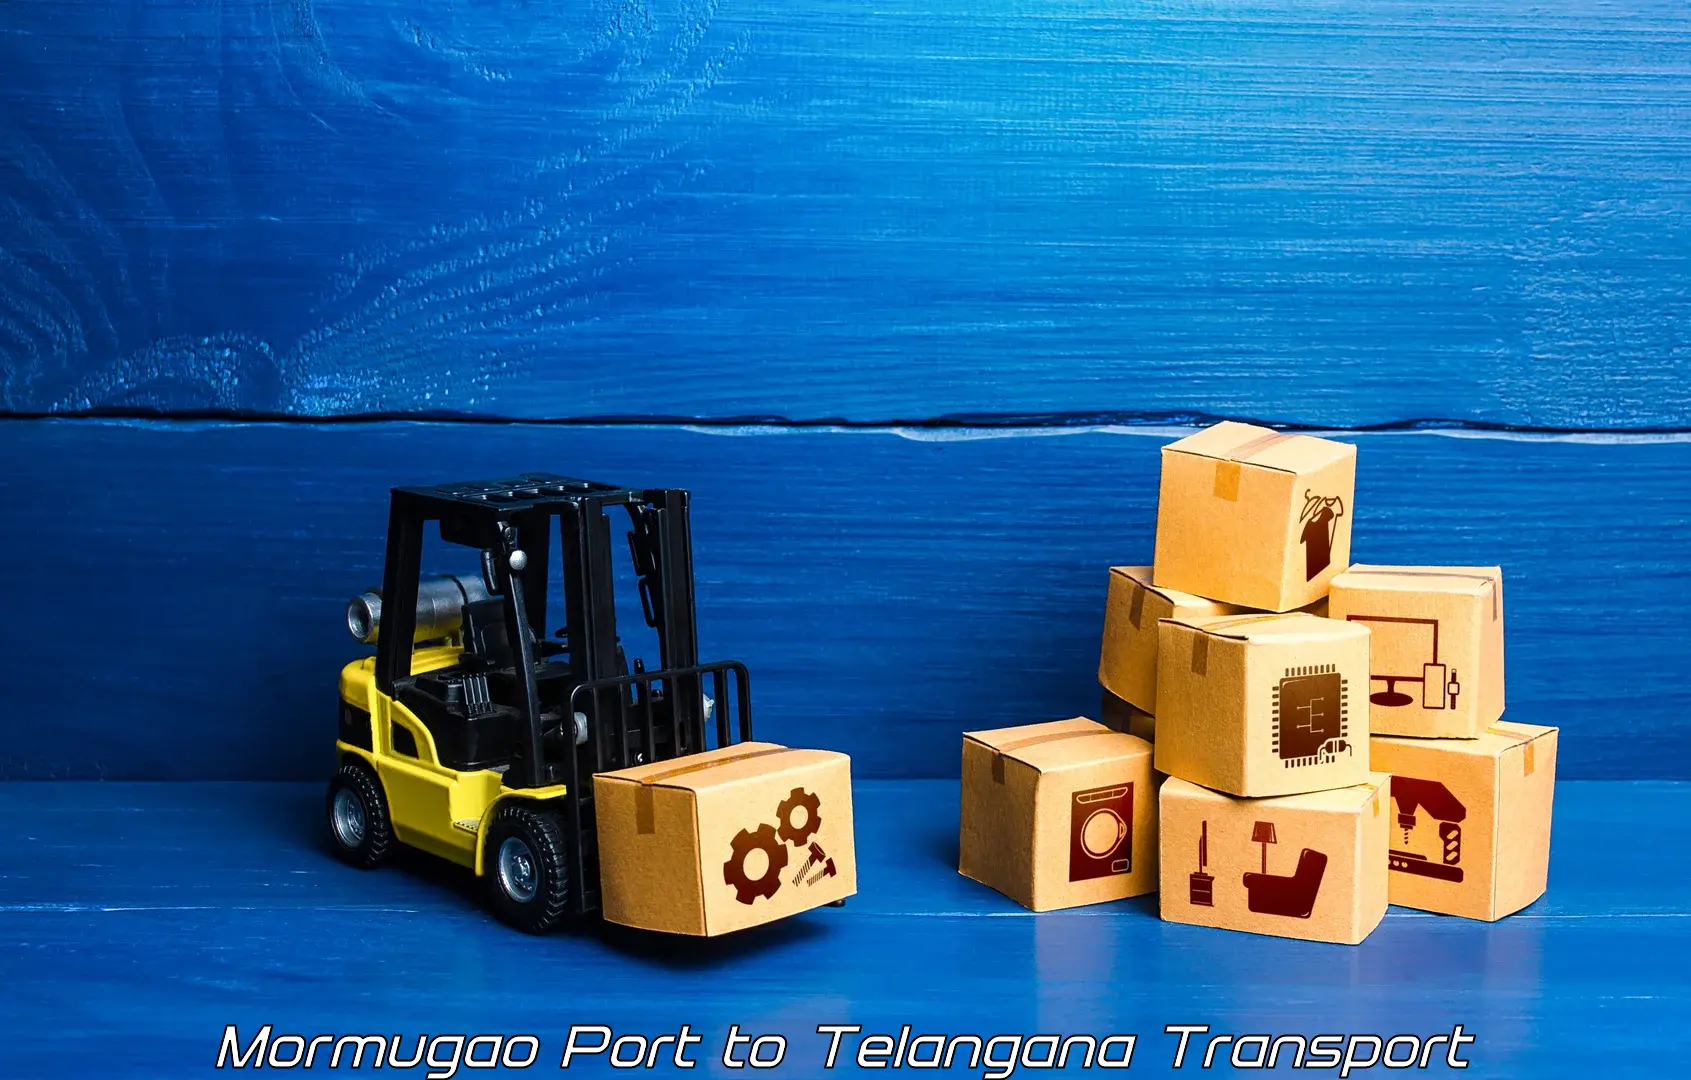 Daily parcel service transport Mormugao Port to Ramagundam